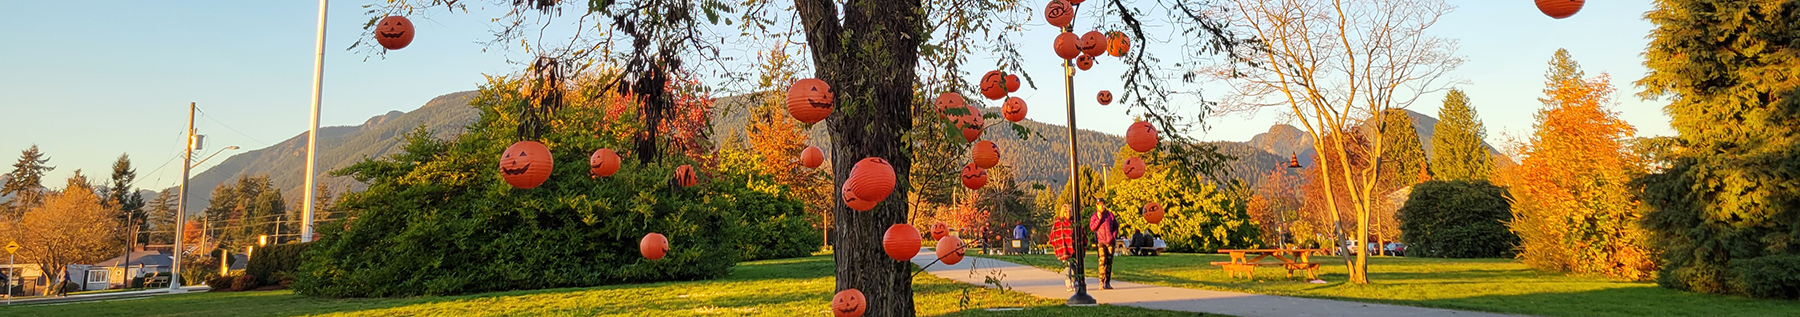 pumpkins hanging in tree